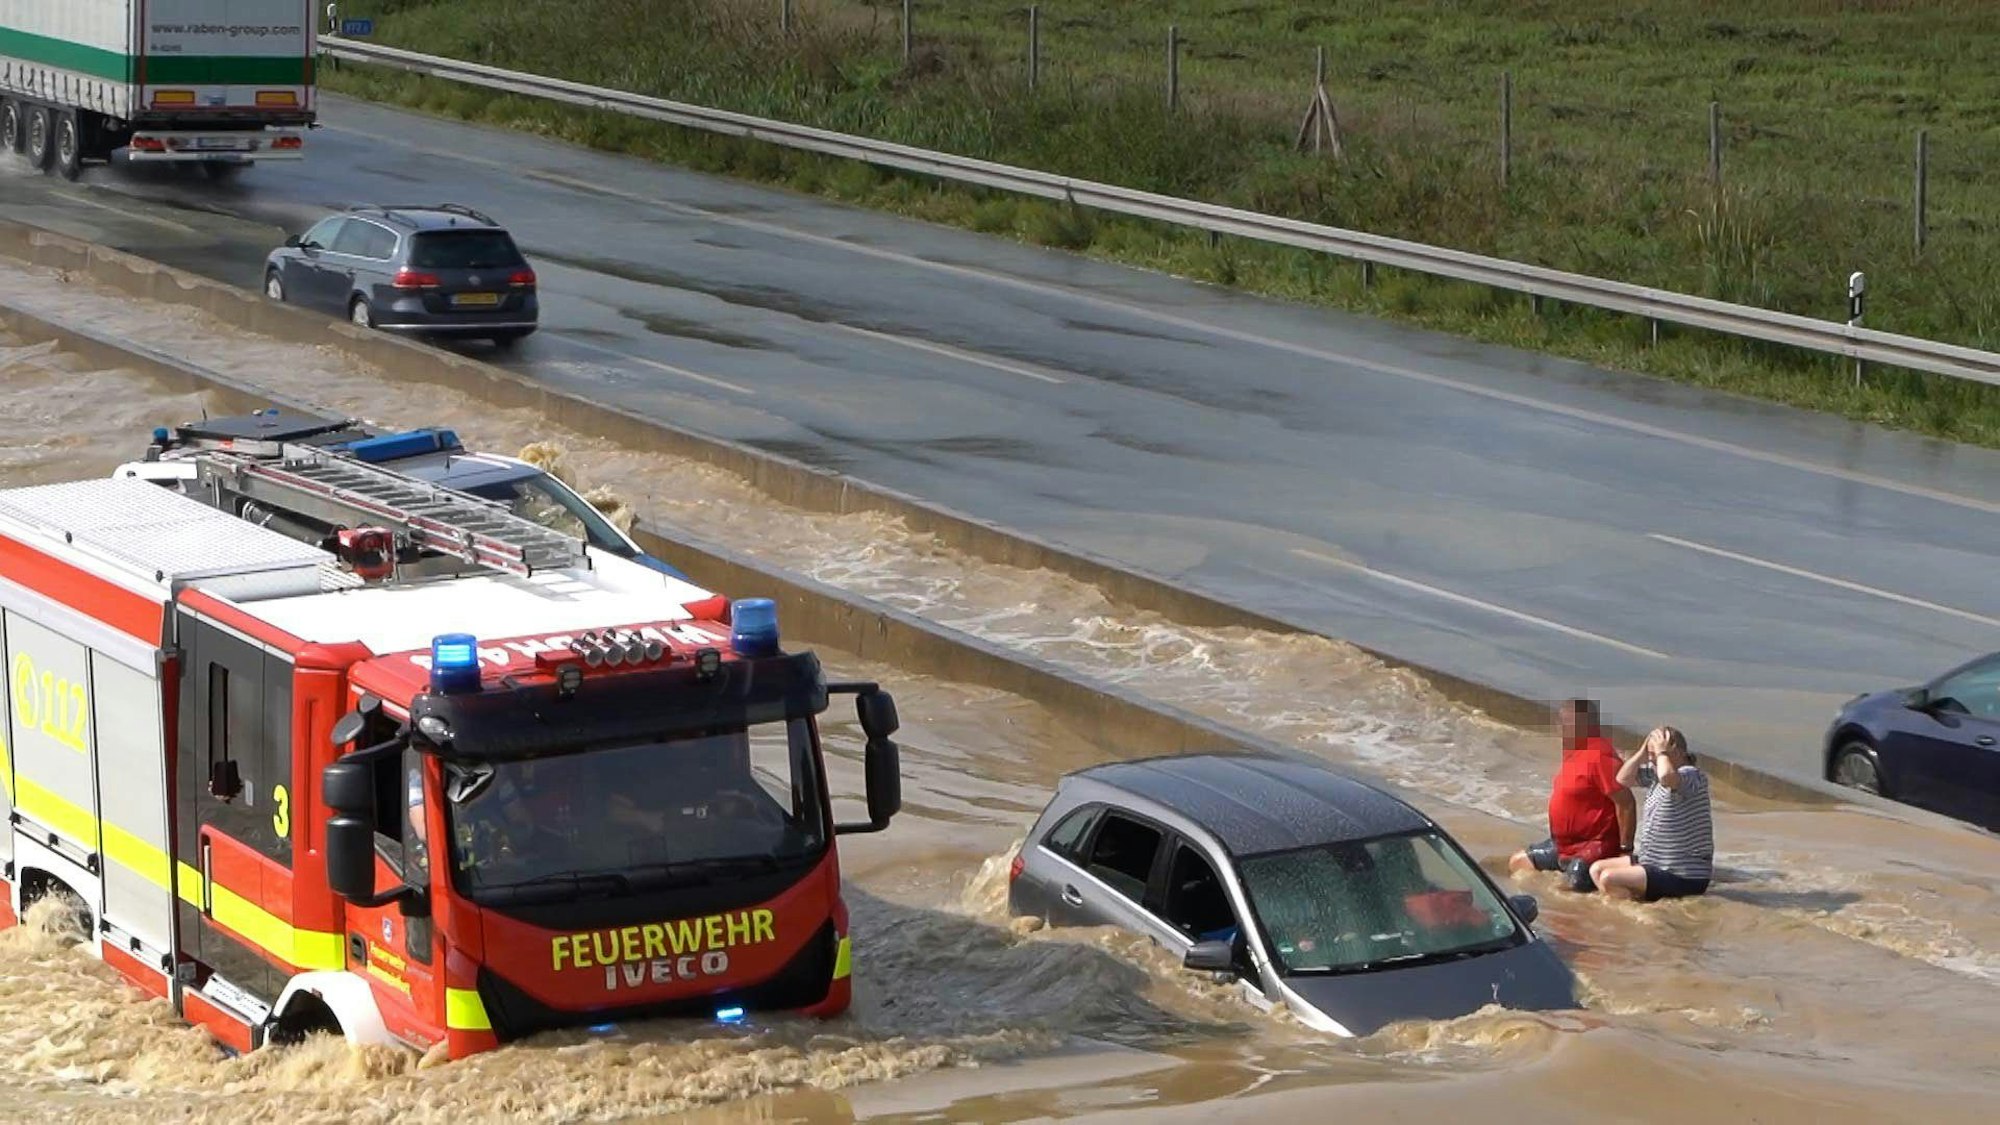 Fahrzeuge stehen auf der nach einem Unwetter auf der überfluteten Fahrbahn der Autobahn 2.